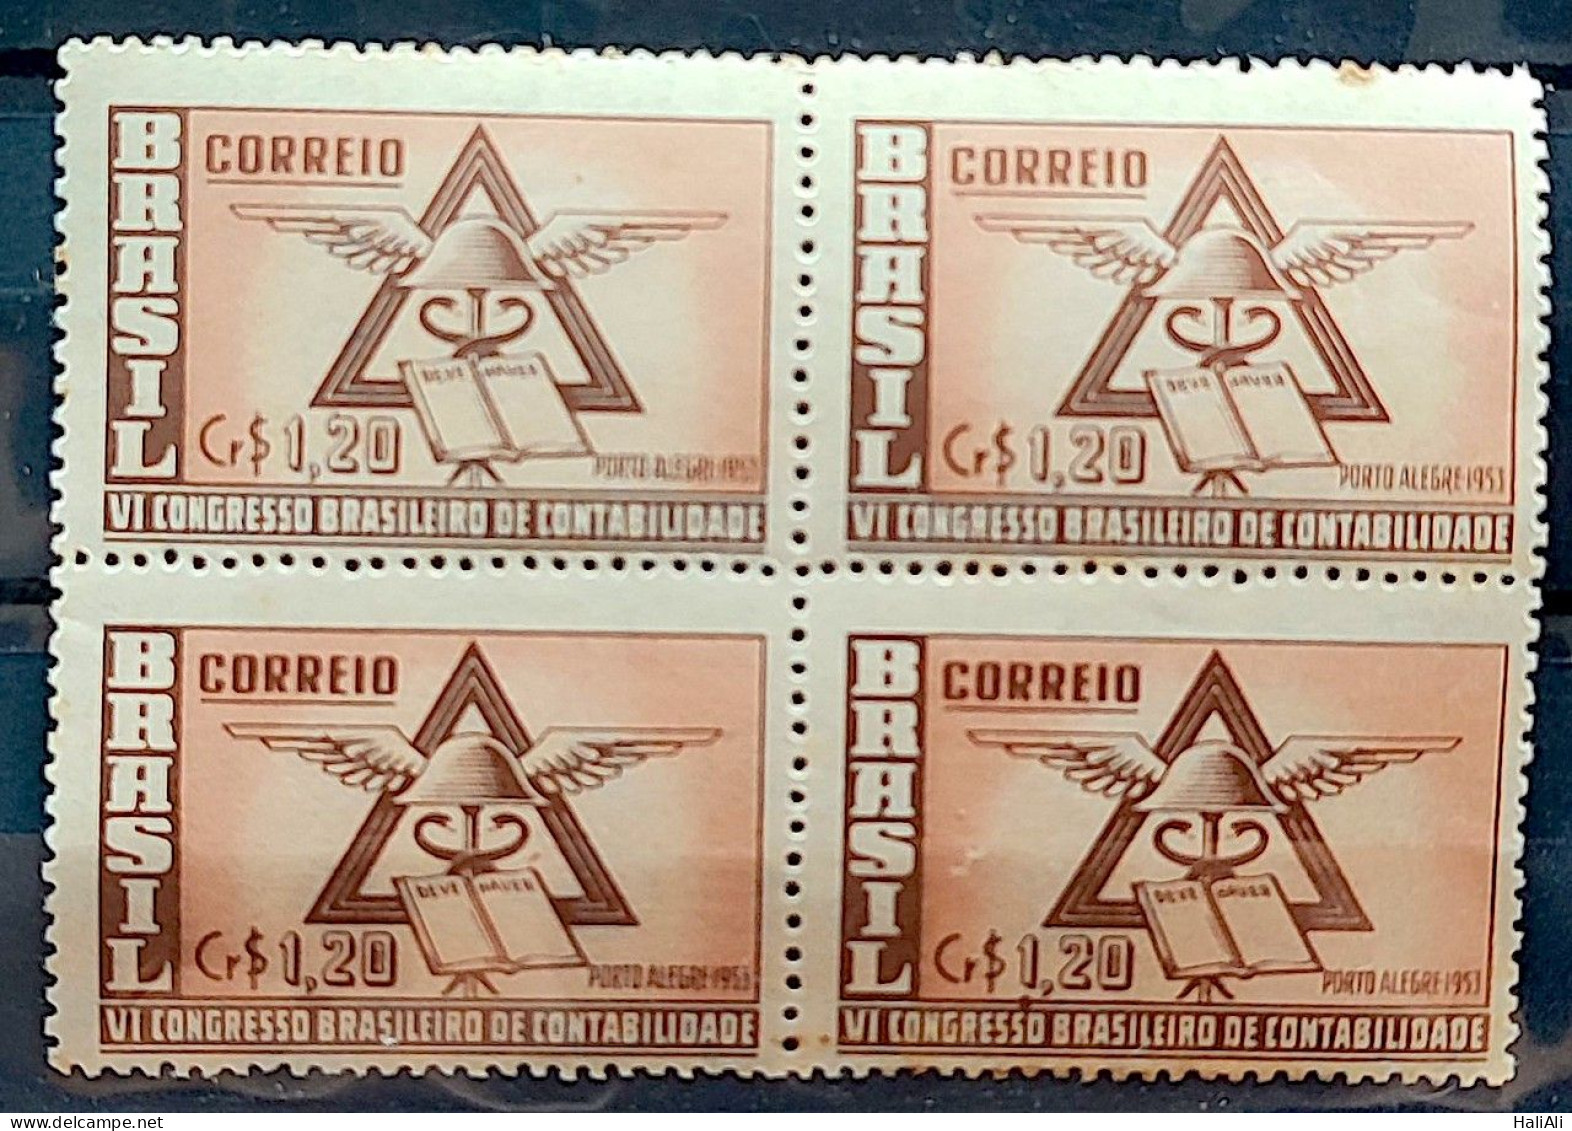 C 296 Brazil Stamp Accounting Congress Porto Alegre Economy 1953 Block Of 4 2 - Nuovi